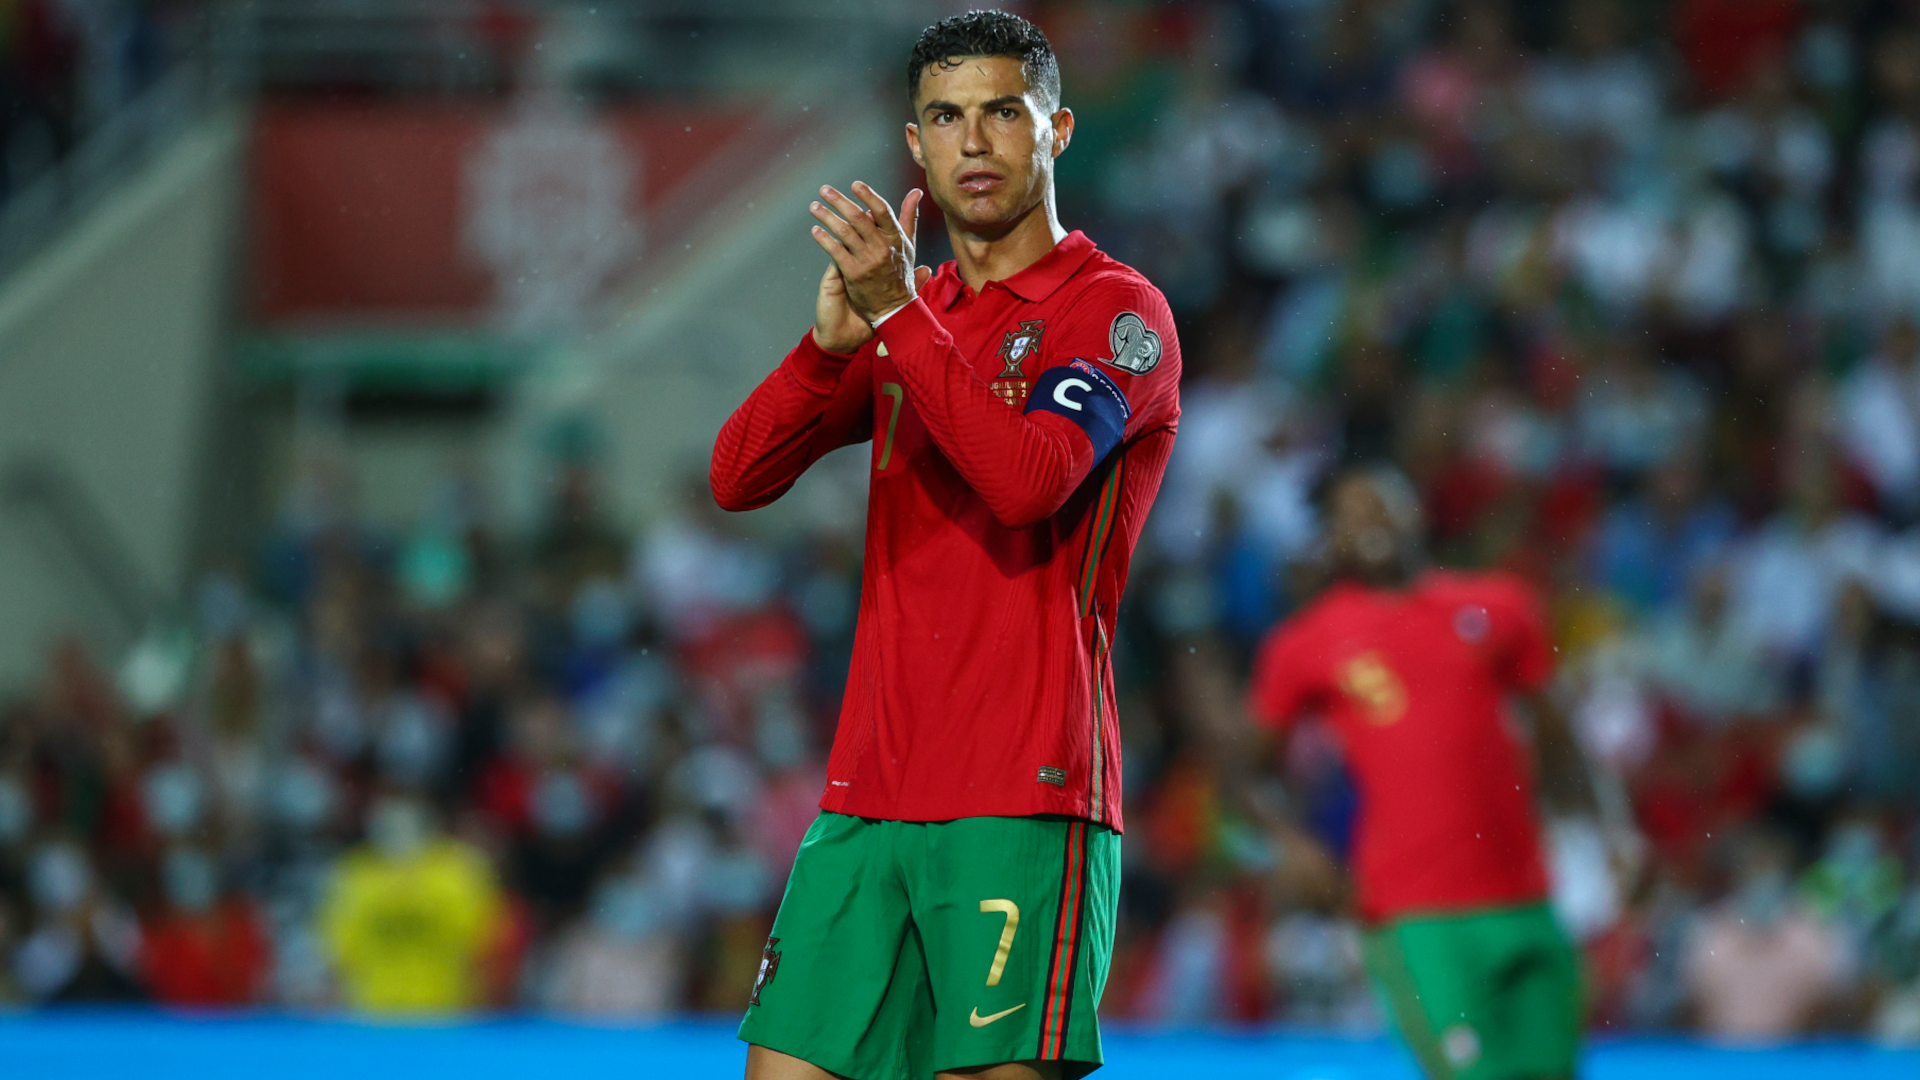 
                <strong>Portugal (Platz 2 in Gruppe A)</strong><br>
                Cristiano Ronaldo zittert um seine möglicherweise letzte WM-Teilnahme. Nach der Last-Minute-Niederlage gegen Serbien müssen die Portugiesen den Umweg über die Playoffs nehmen. Serbien löste mit dem Sieg im letzten Gruppenspiel das WM-Ticket.
              